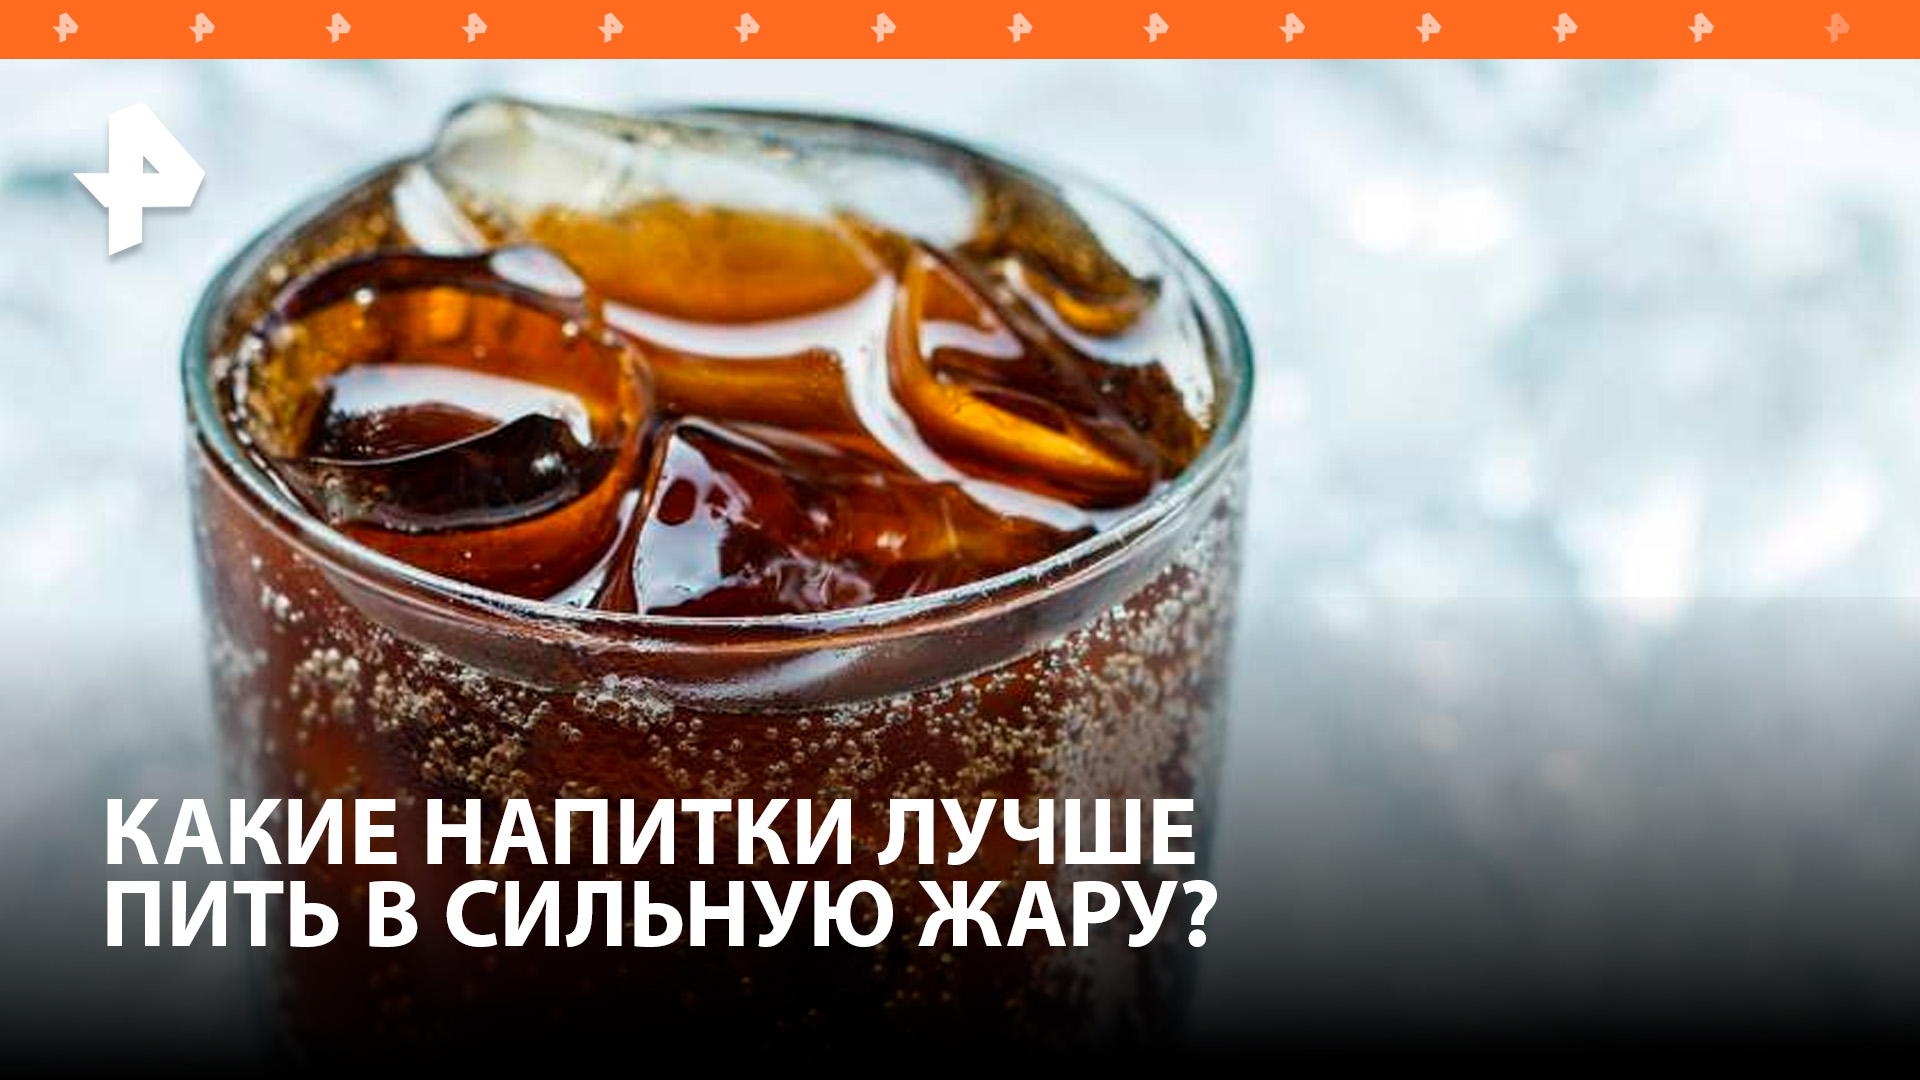 Какие напитки не стоит употреблять в жару, выяснил РЕН ТВ